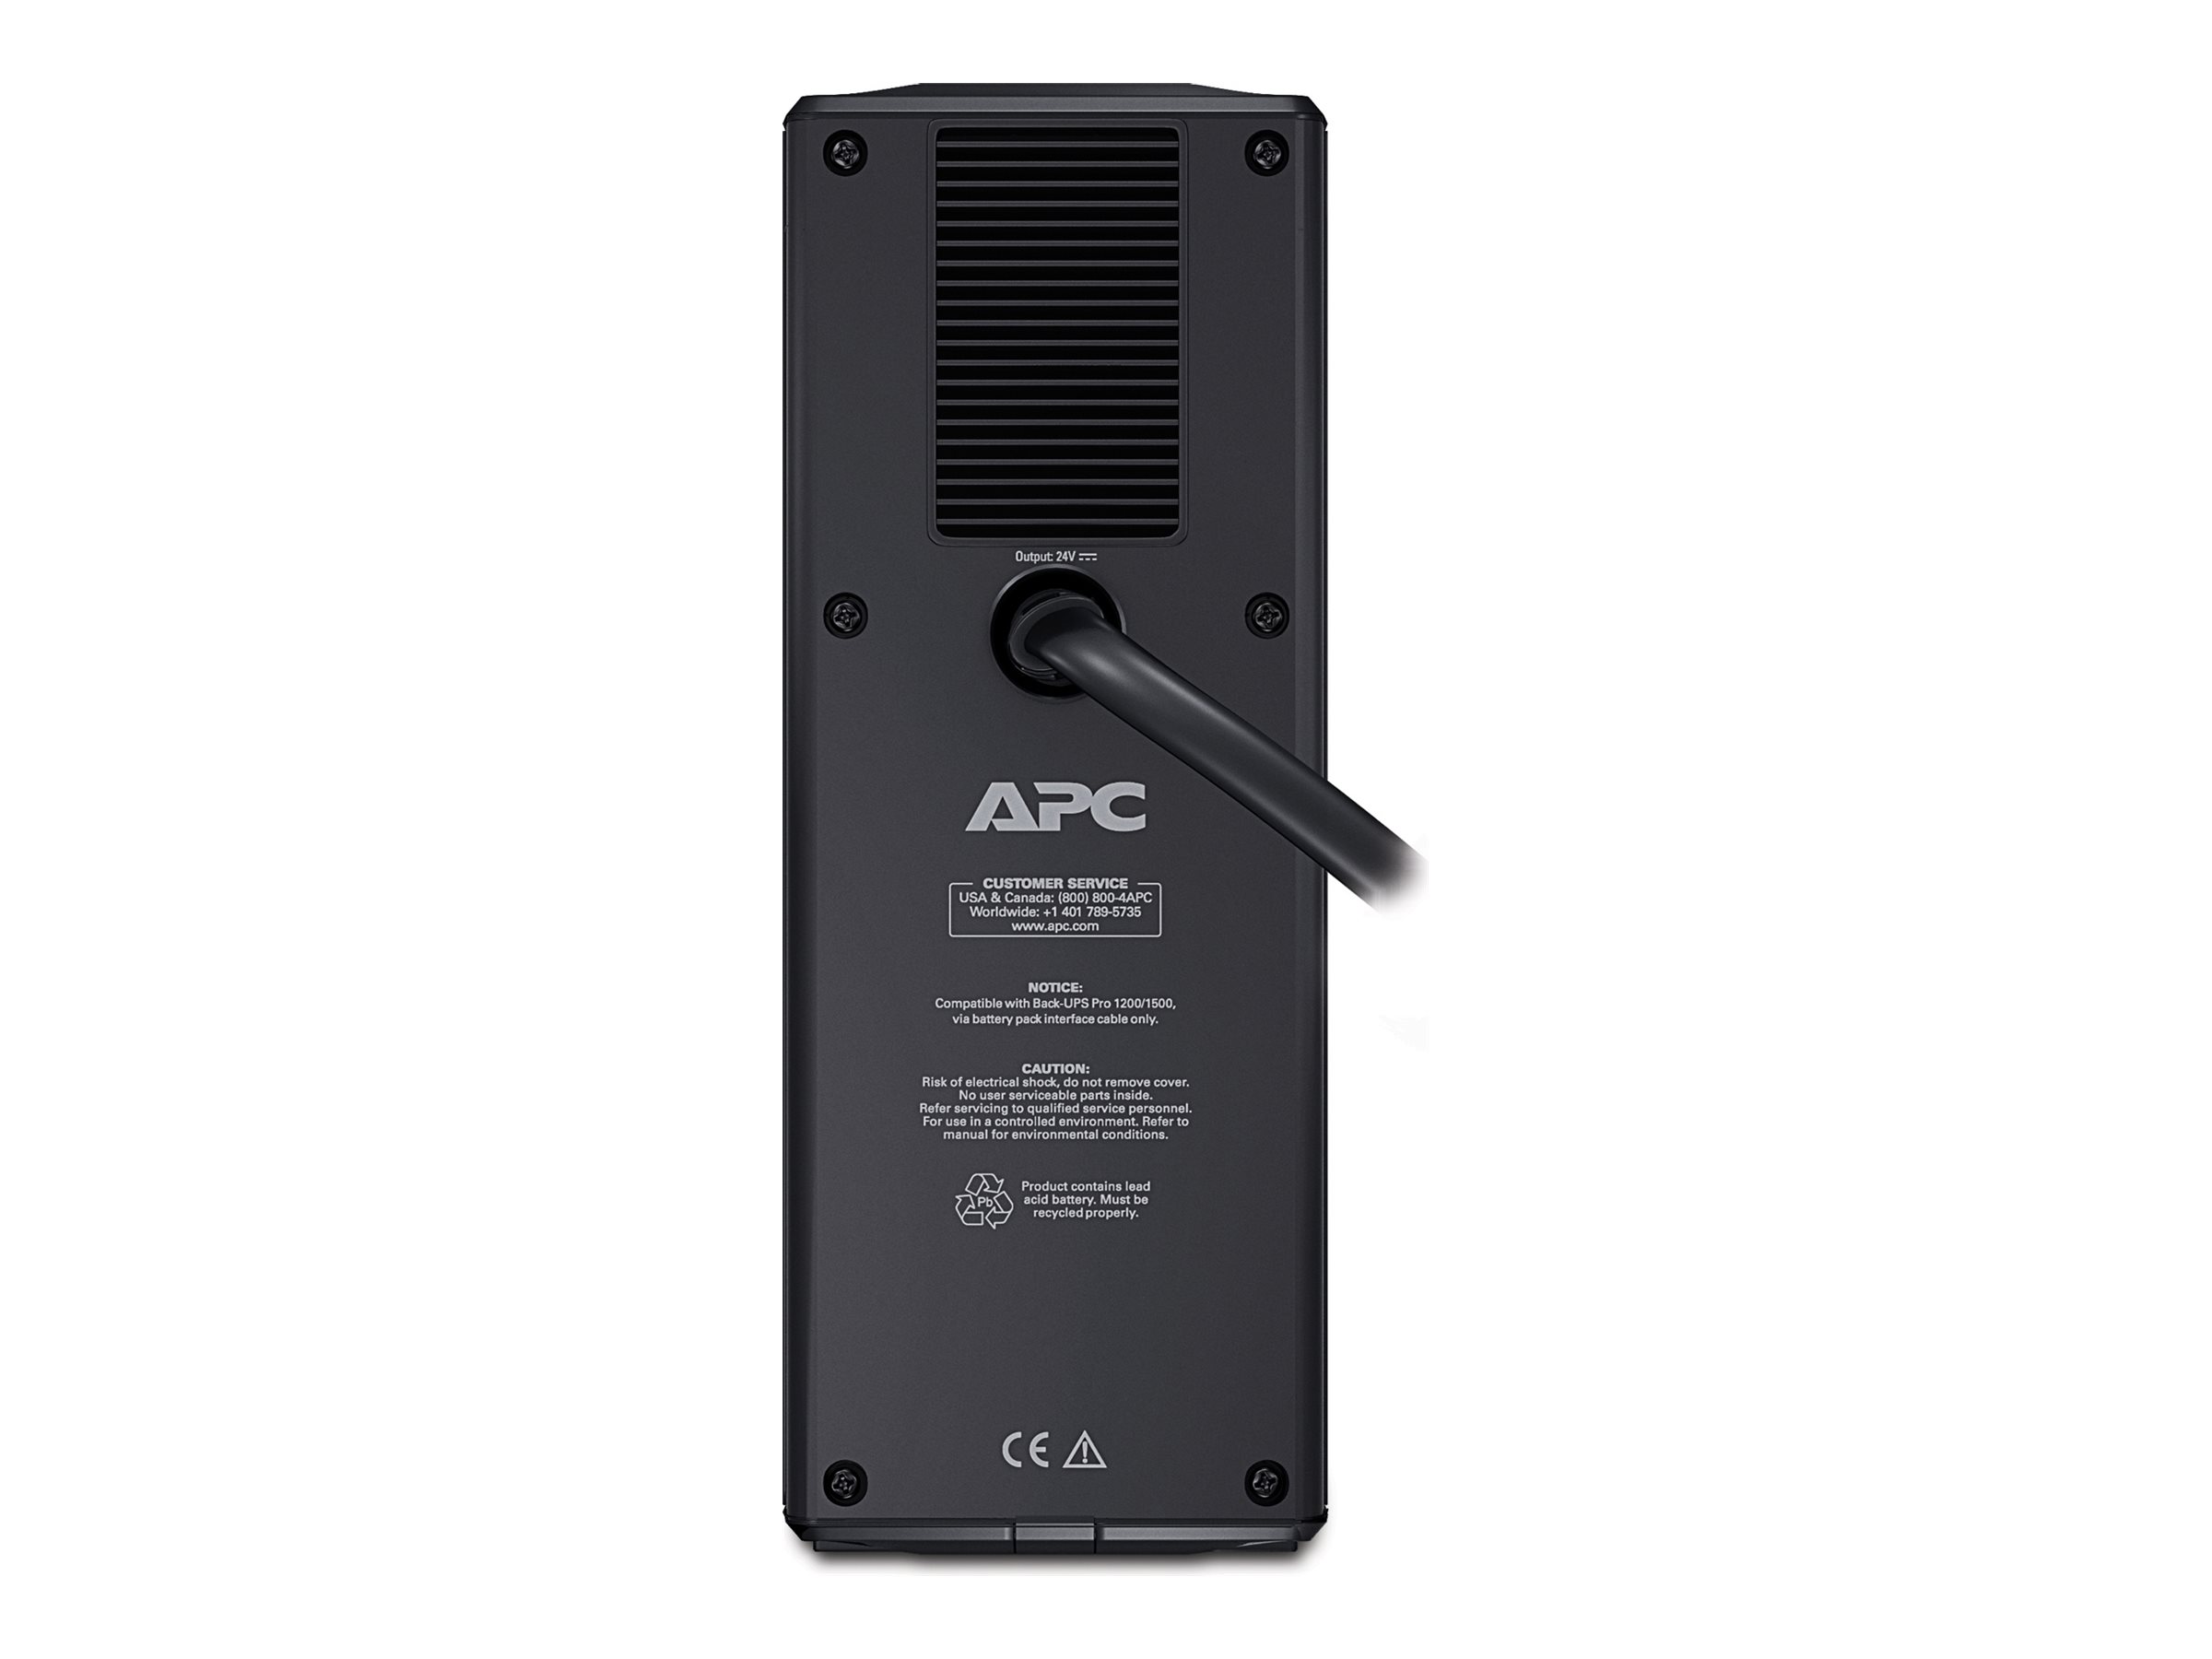 APC Back-UPS Pro Batterie 24V - Boîtier de piles - 12 V - 2 x batterie - Acide de plomb - noir - pour P/N: BR1500, BR1500G, BR1500G-BR, BR1500G-CN, BR1500G-FR, BR1500G-GR, BR1500GI, BR1500I - BR24BPG - Boîtiers d'alimentation